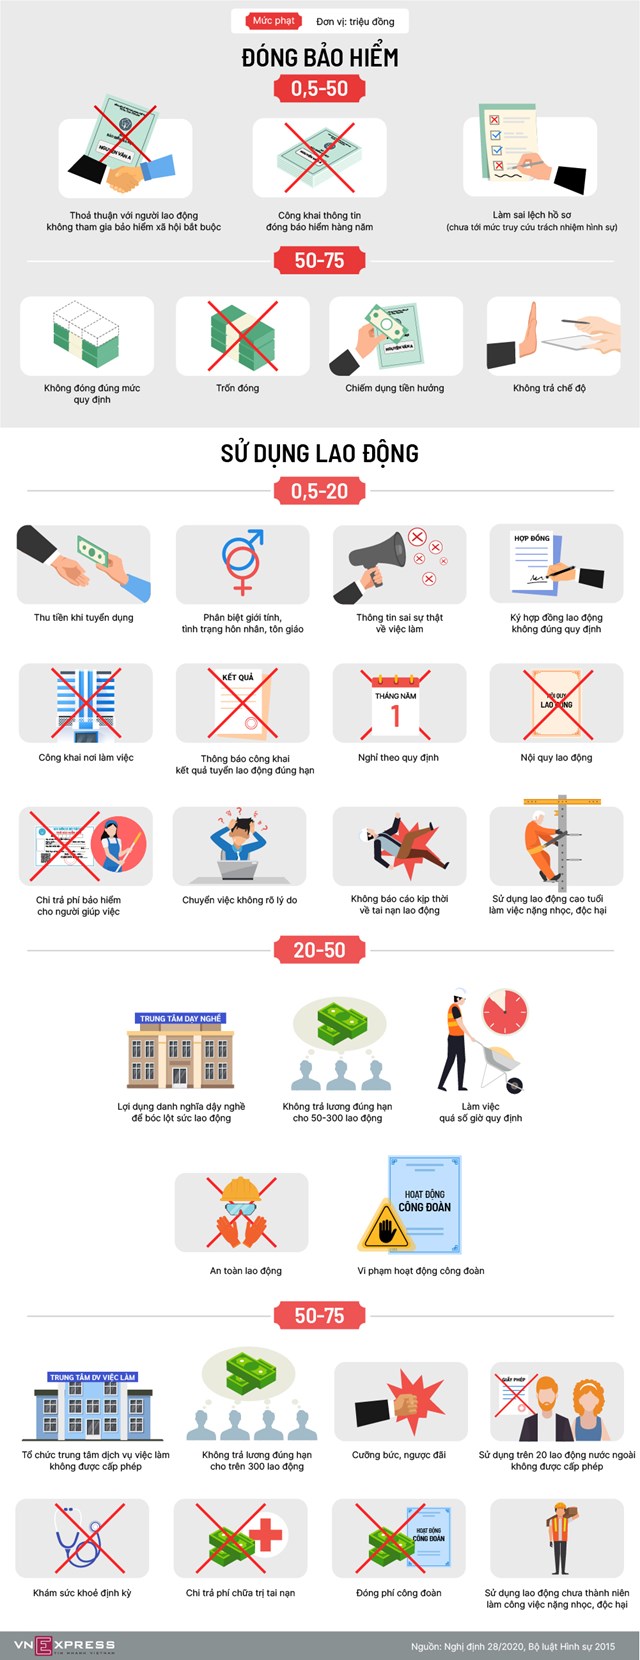 [Infographics] Các mức phạt trong sử dụng lao động - Ảnh 1